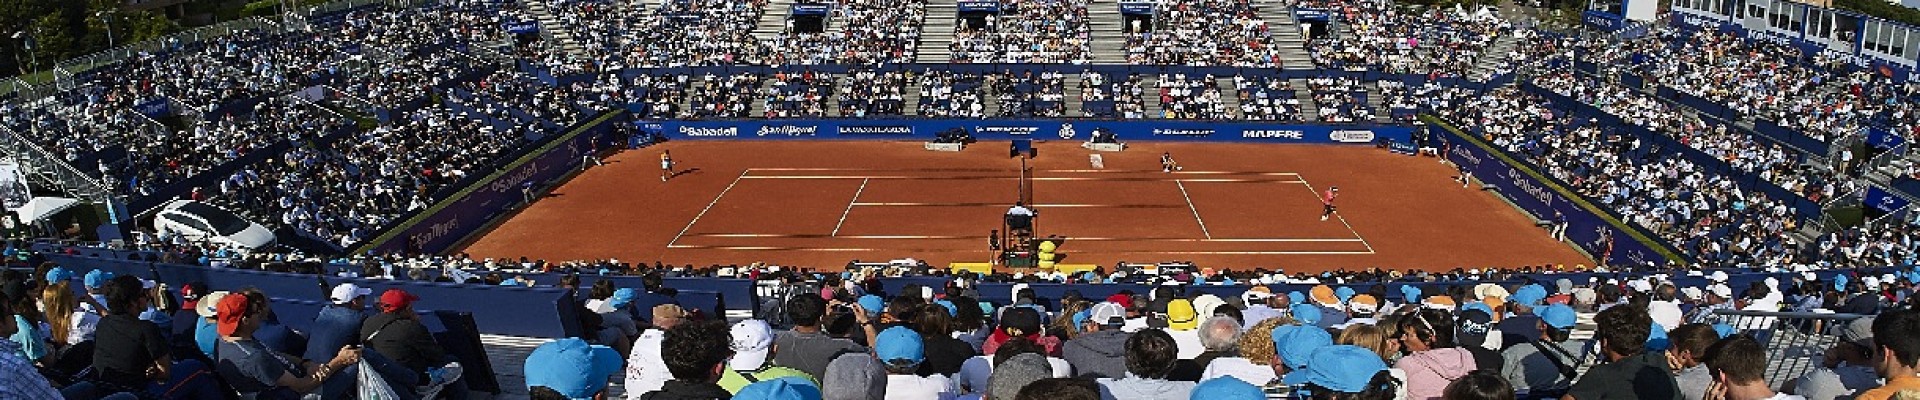 Barcelona Açık Tenis Biletleri